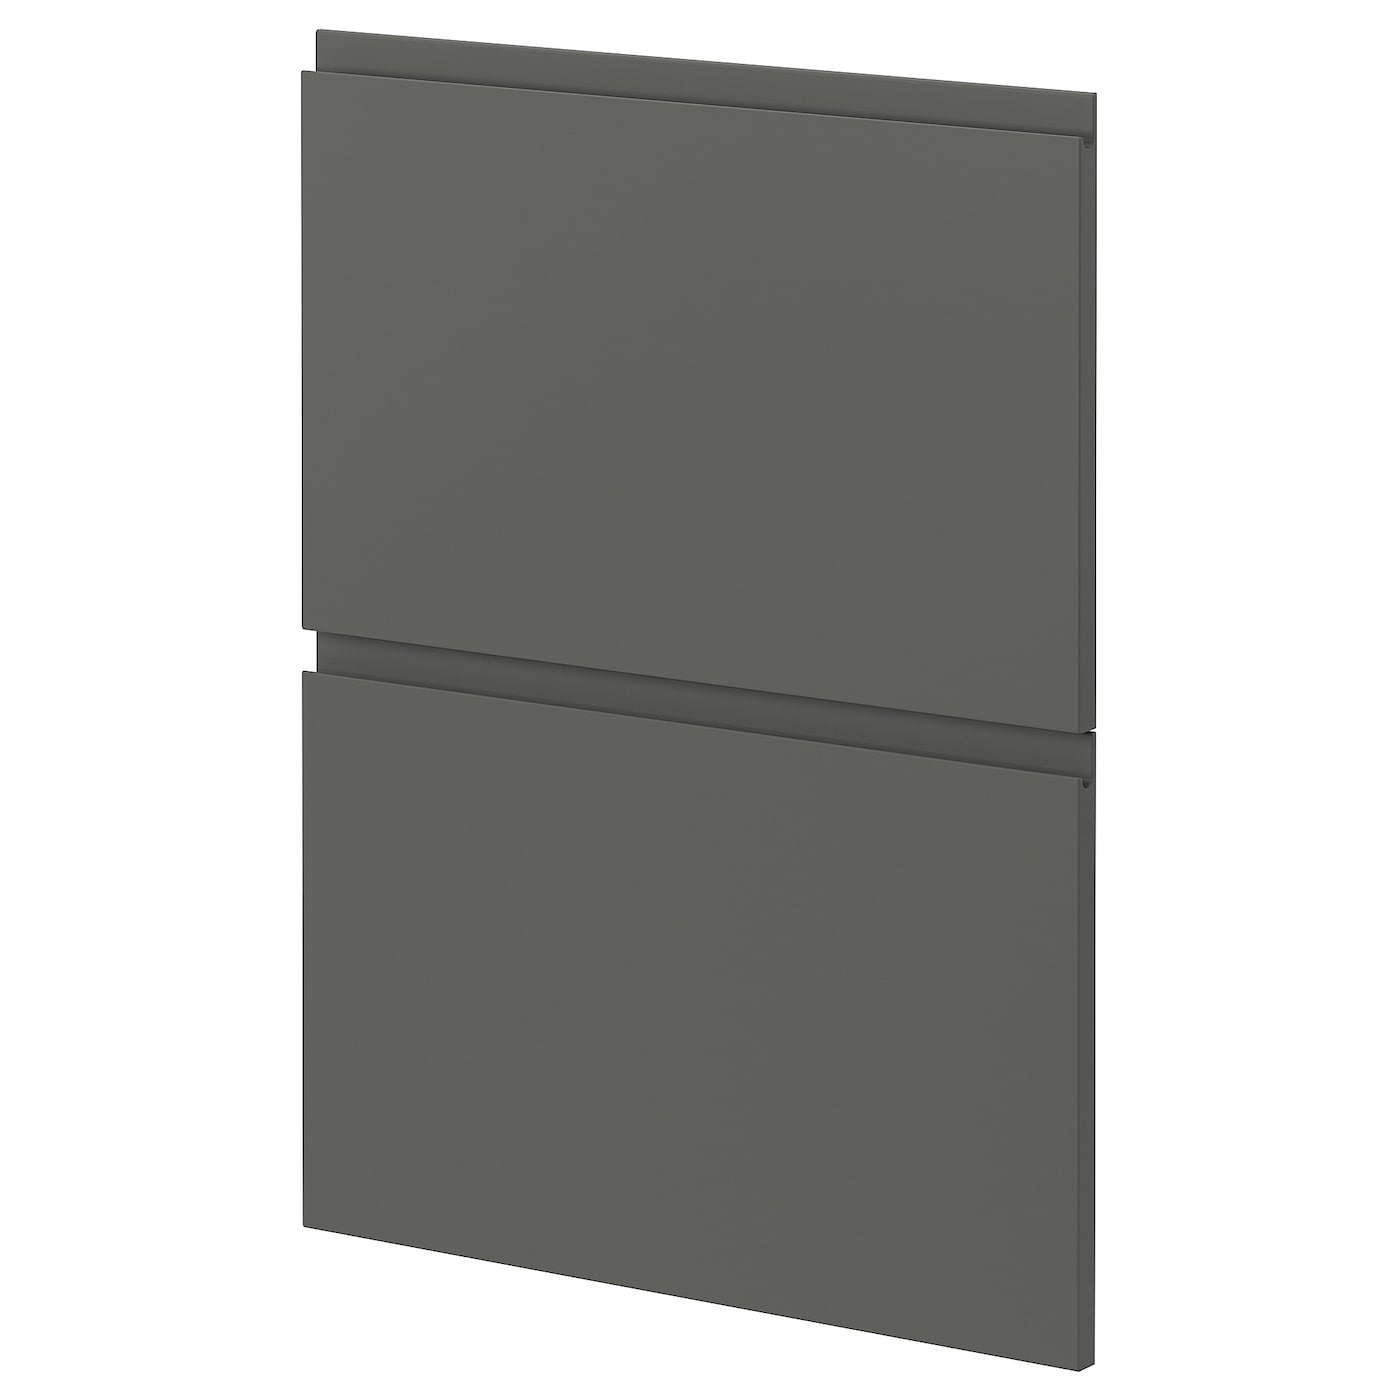 Накладная панель для посудомоечной машины - IKEA METOD, 80х60 см, темно-серый, МЕТОД ИКЕА